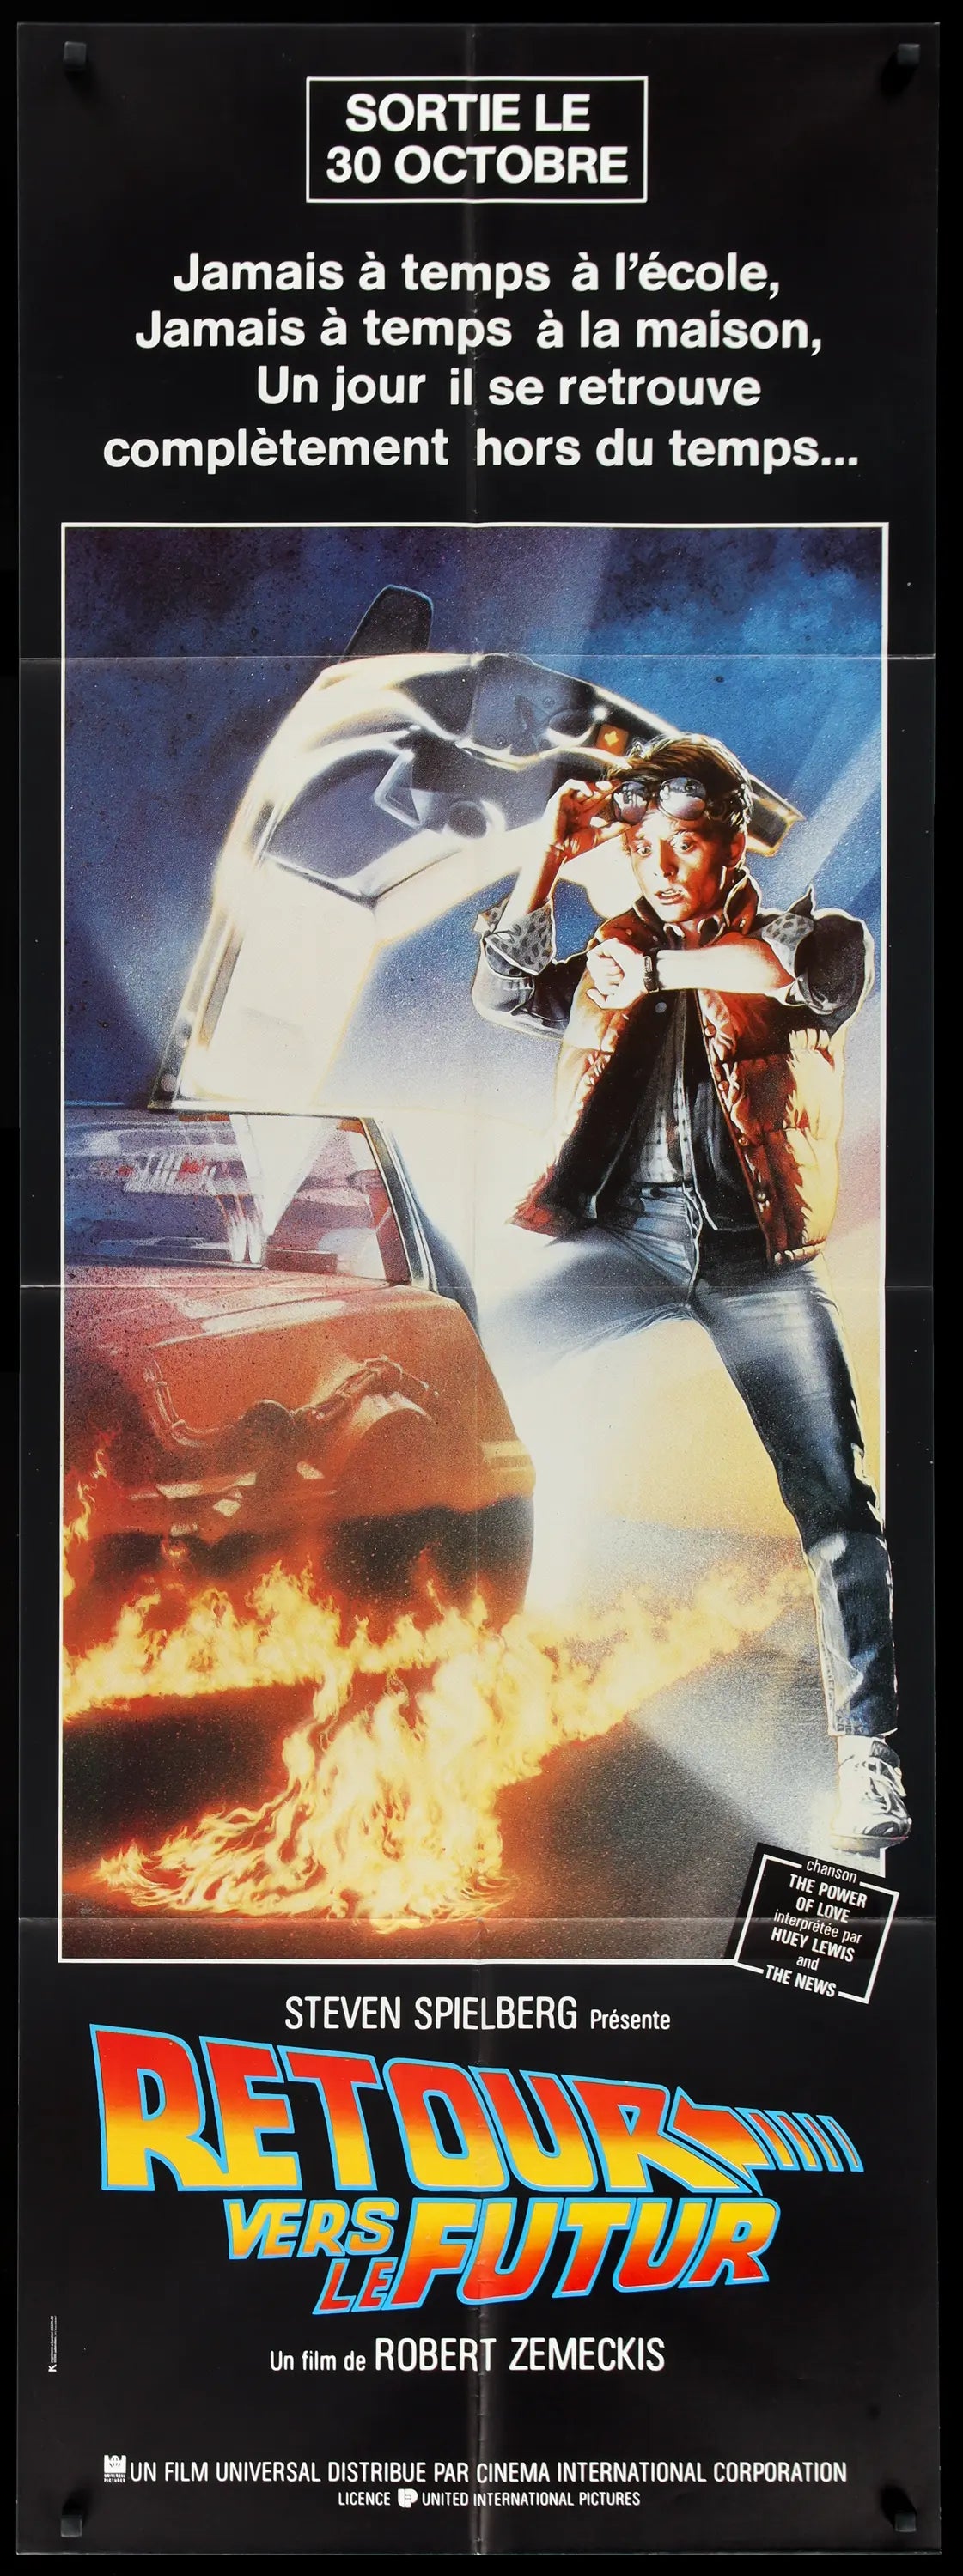 Regreso al futuro (1985)